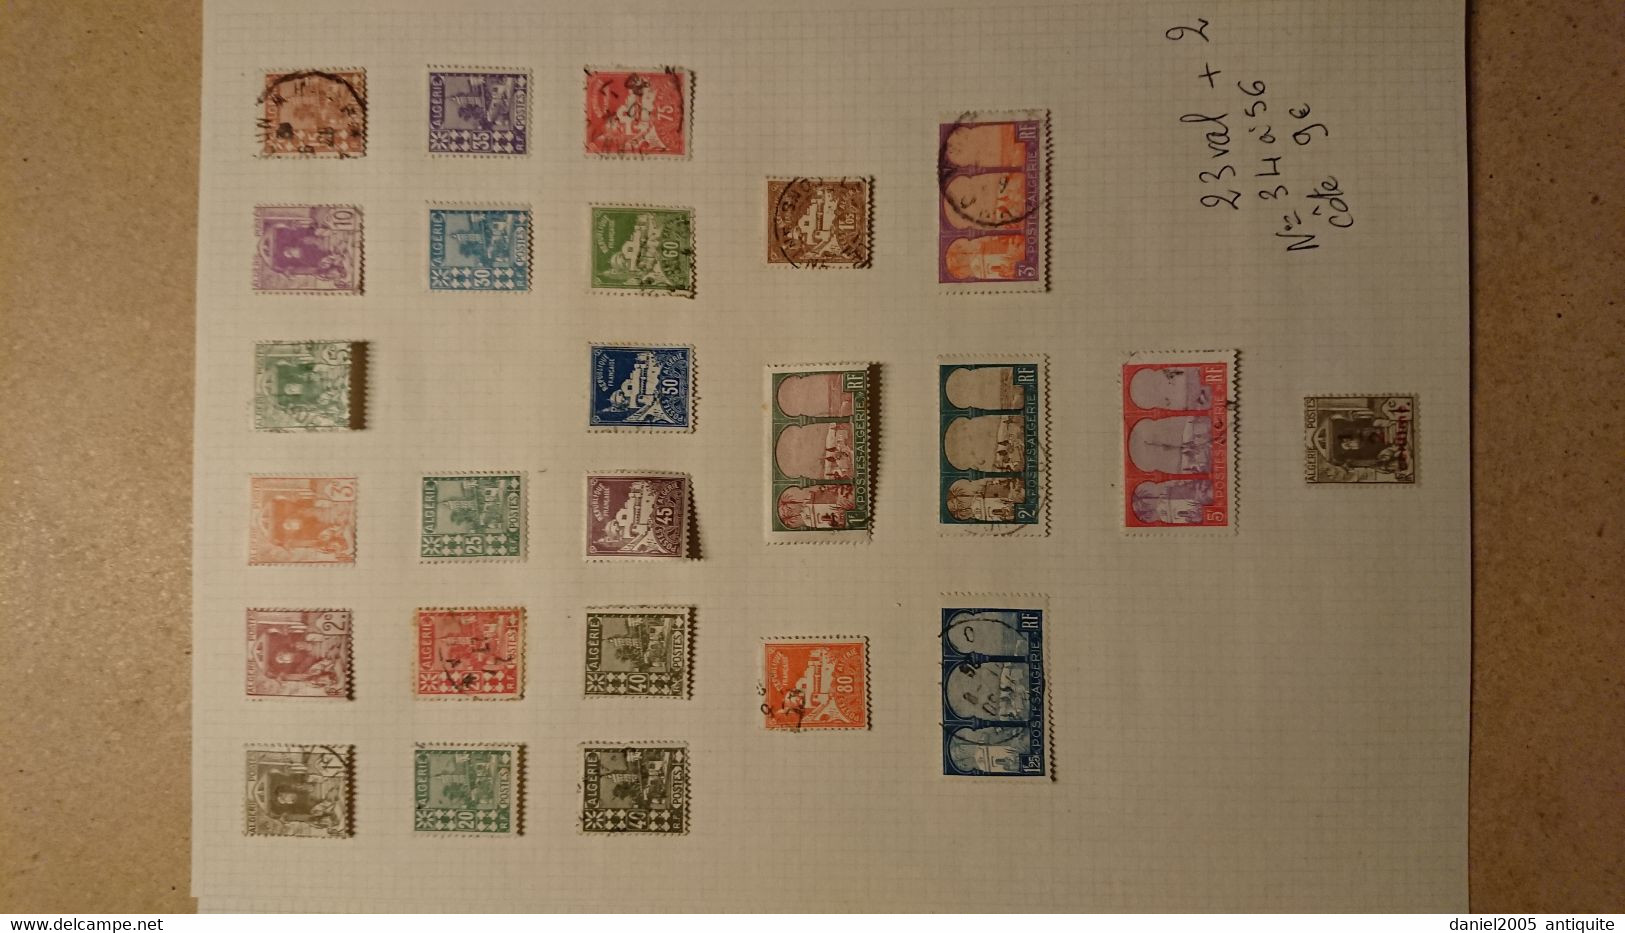 Algérie -  lot de timbres neufs avec charnières